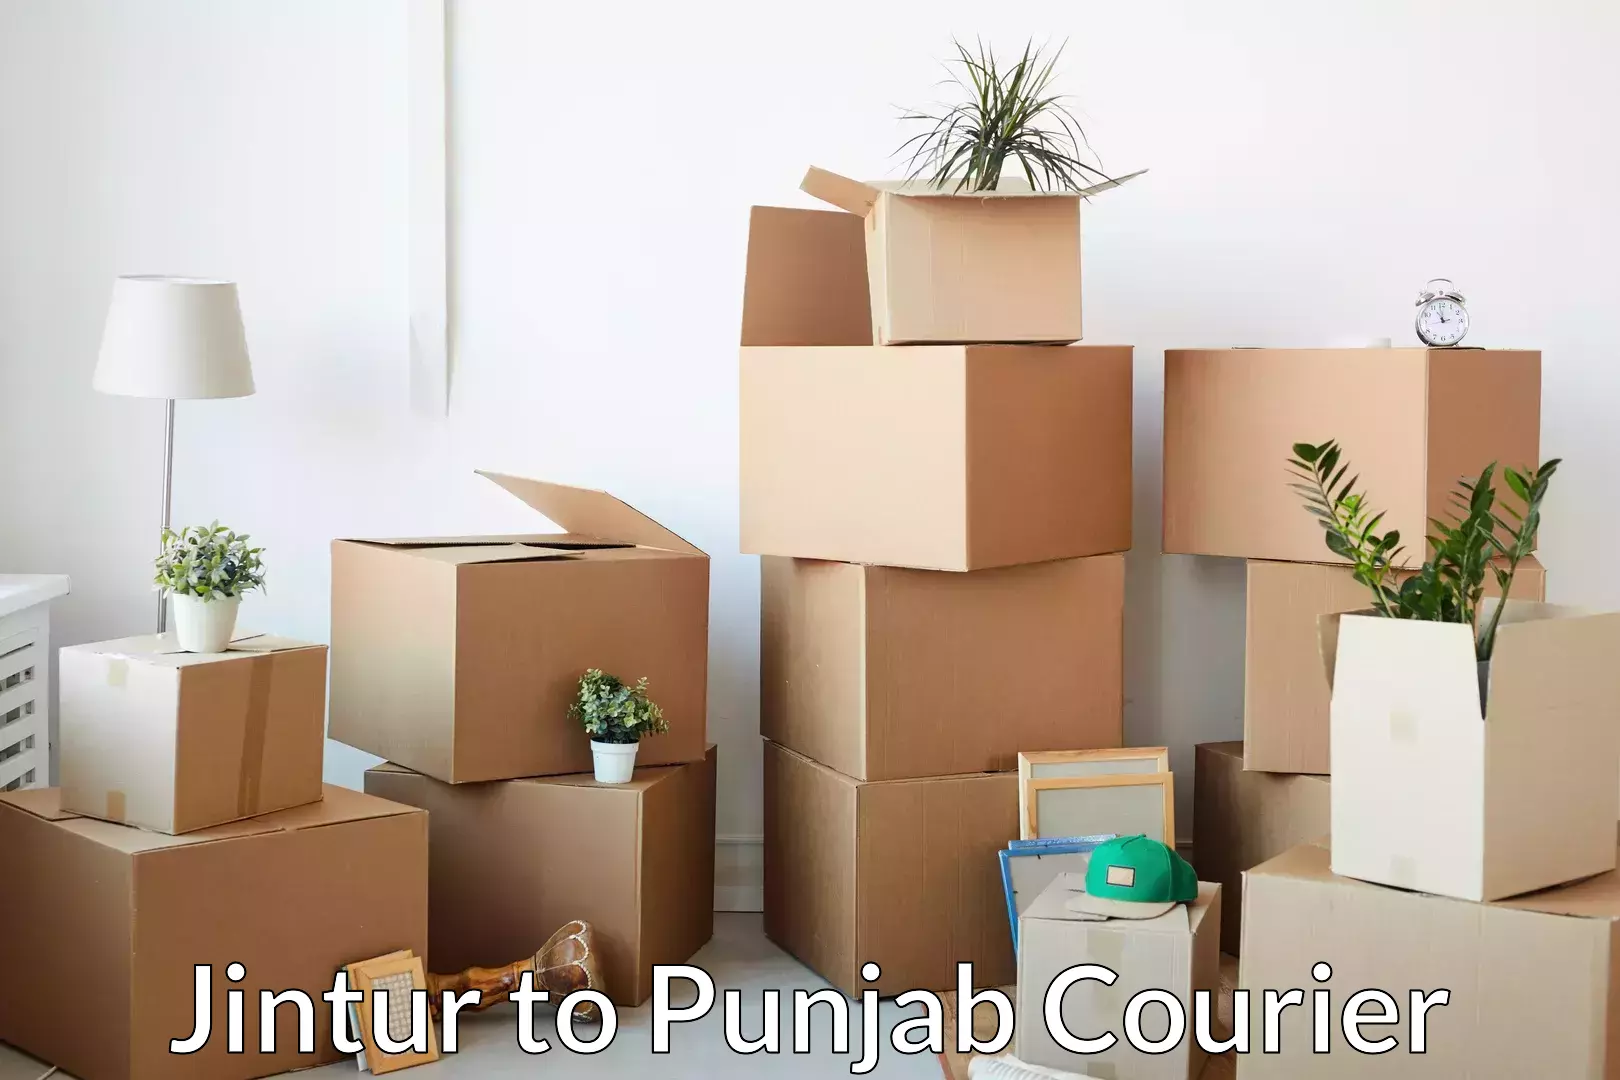 Skilled furniture transporters Jintur to Punjab